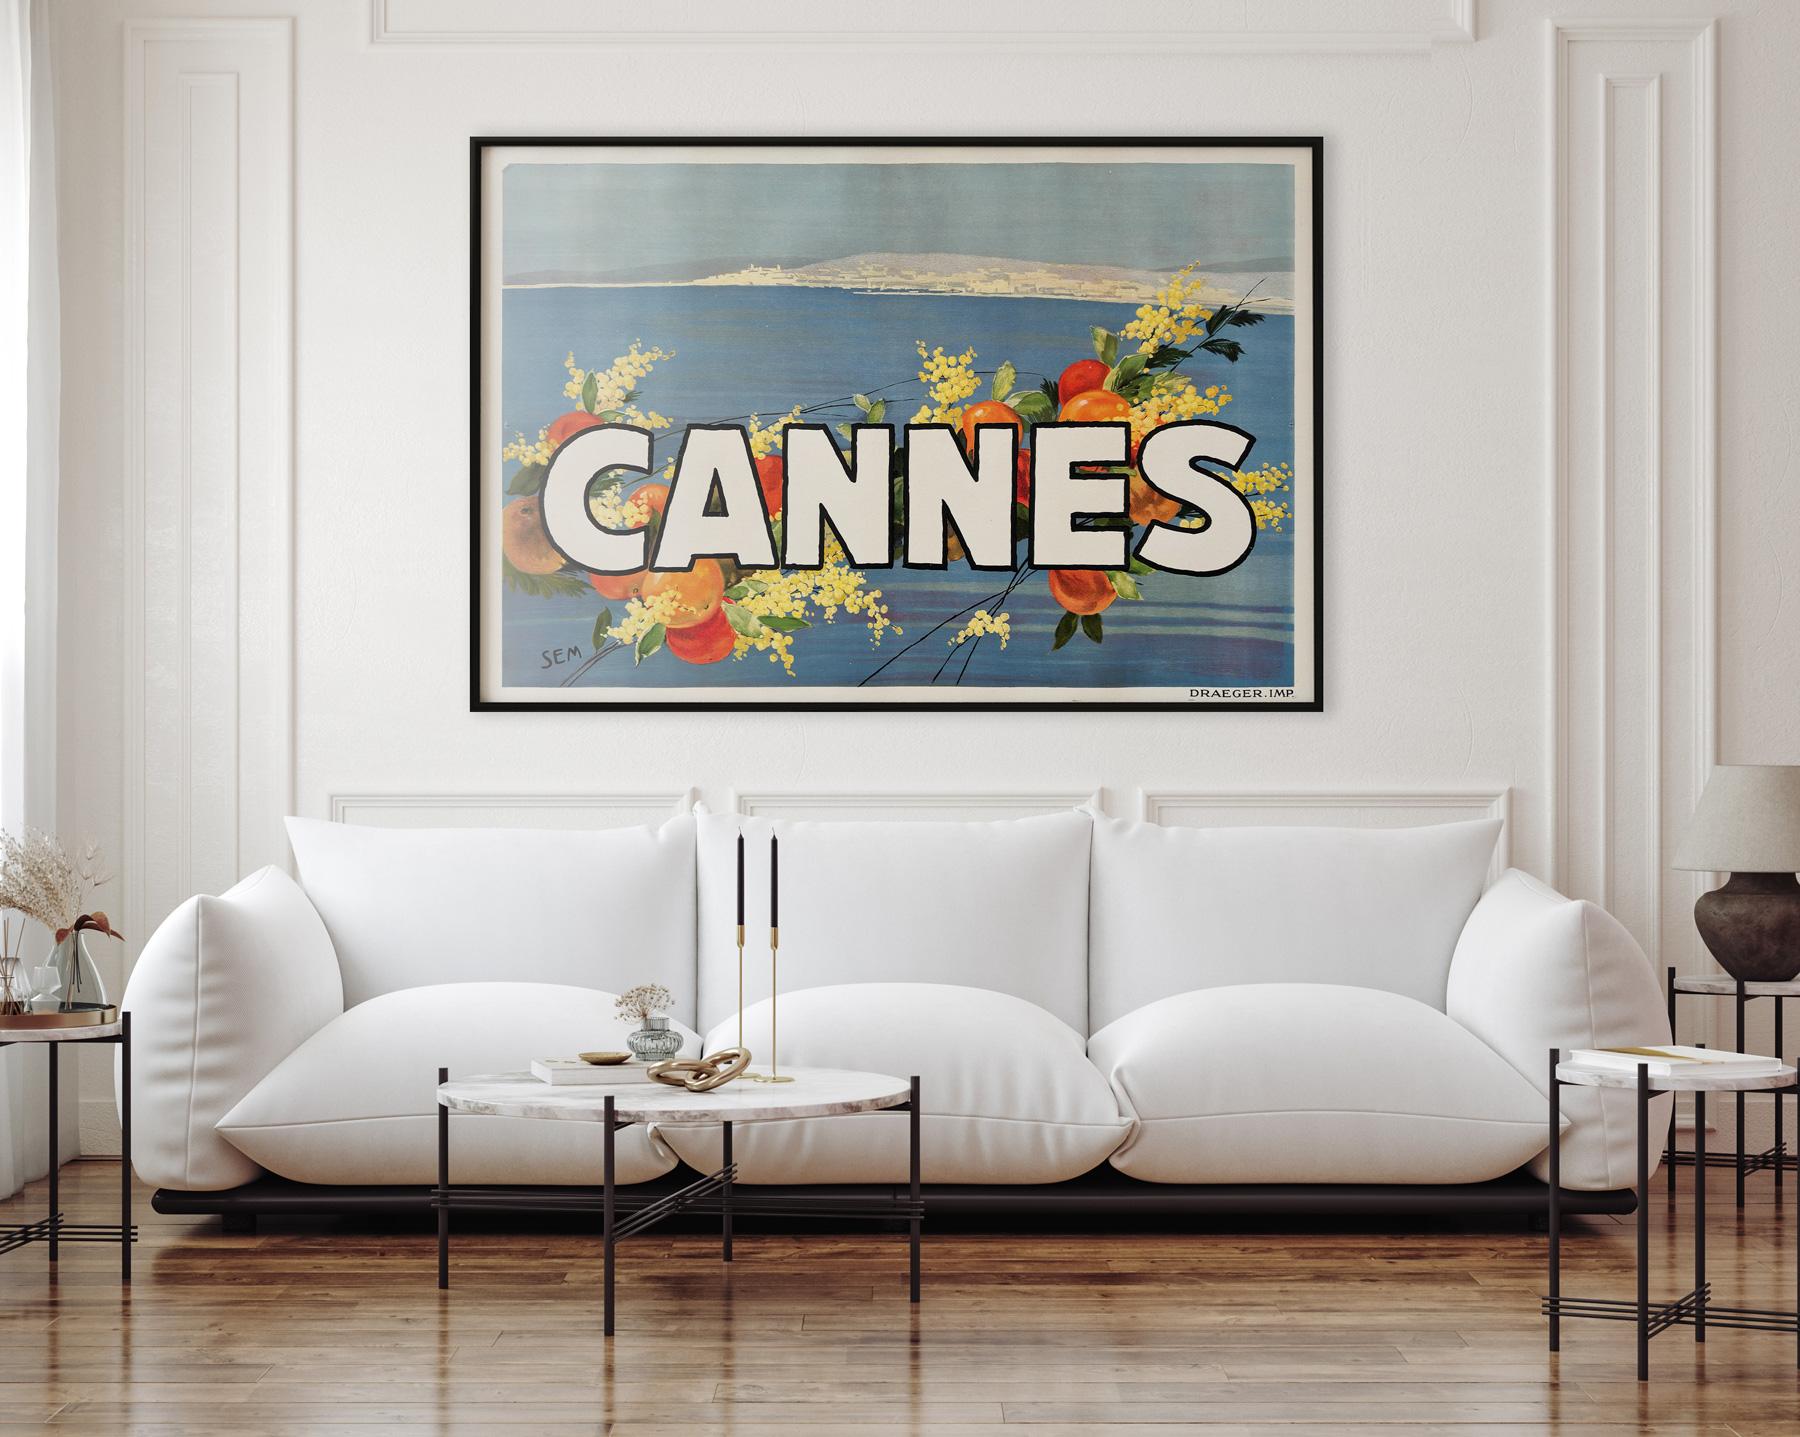 Wunderschönes Originalplakat der 1930er Jahre für die Reisewerbung in Cannes, entworfen von George Goursat (SEM). 

In fantastischem Zustand Near Mint/Mint mit Leineneinband.

Dieses originale Vintage-Filmplakat wurde professionell mit Leinen